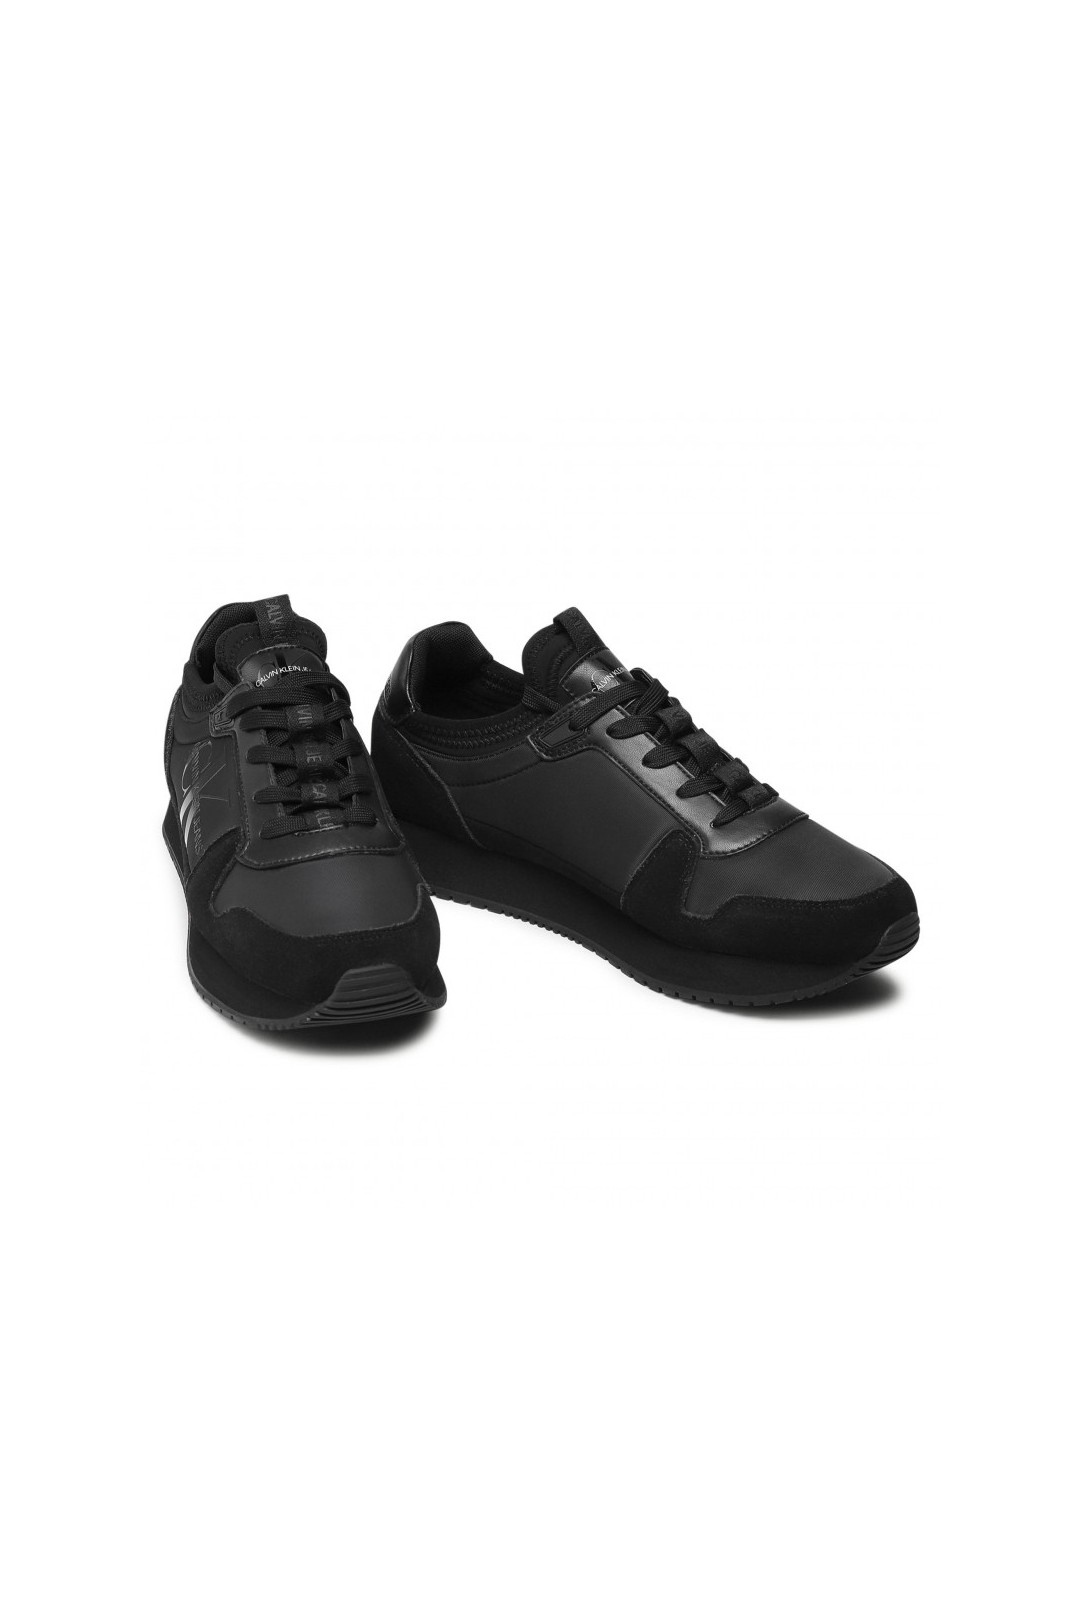 Chaussure mixte sneakers Calvin Klein de couleur noir en daim et simili cuir. YM0YM00040 FIESTA CONCEPT STORE